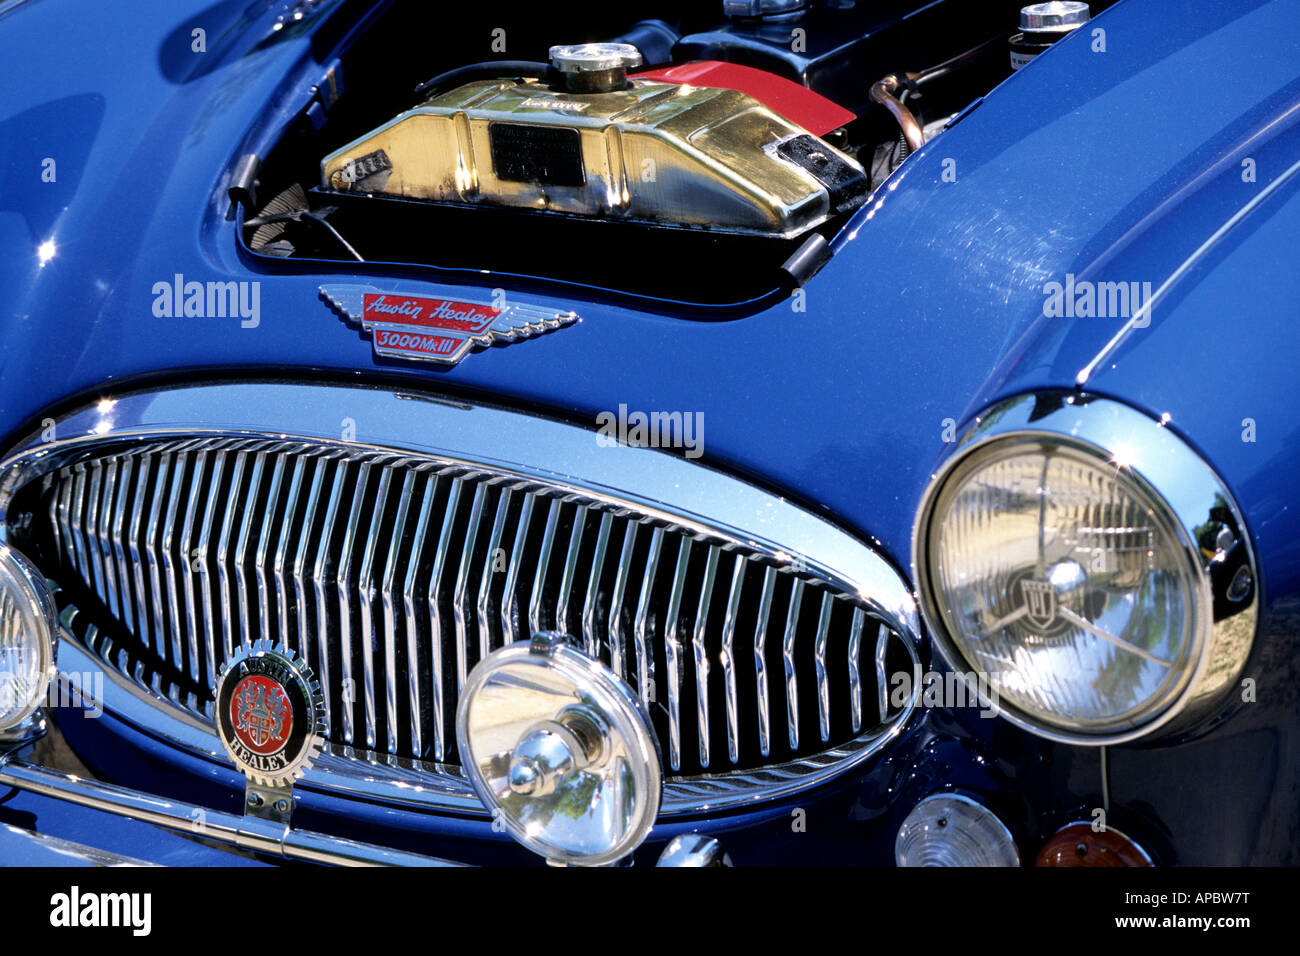 Austin Healey Antique classique voiture britannique Banque D'Images